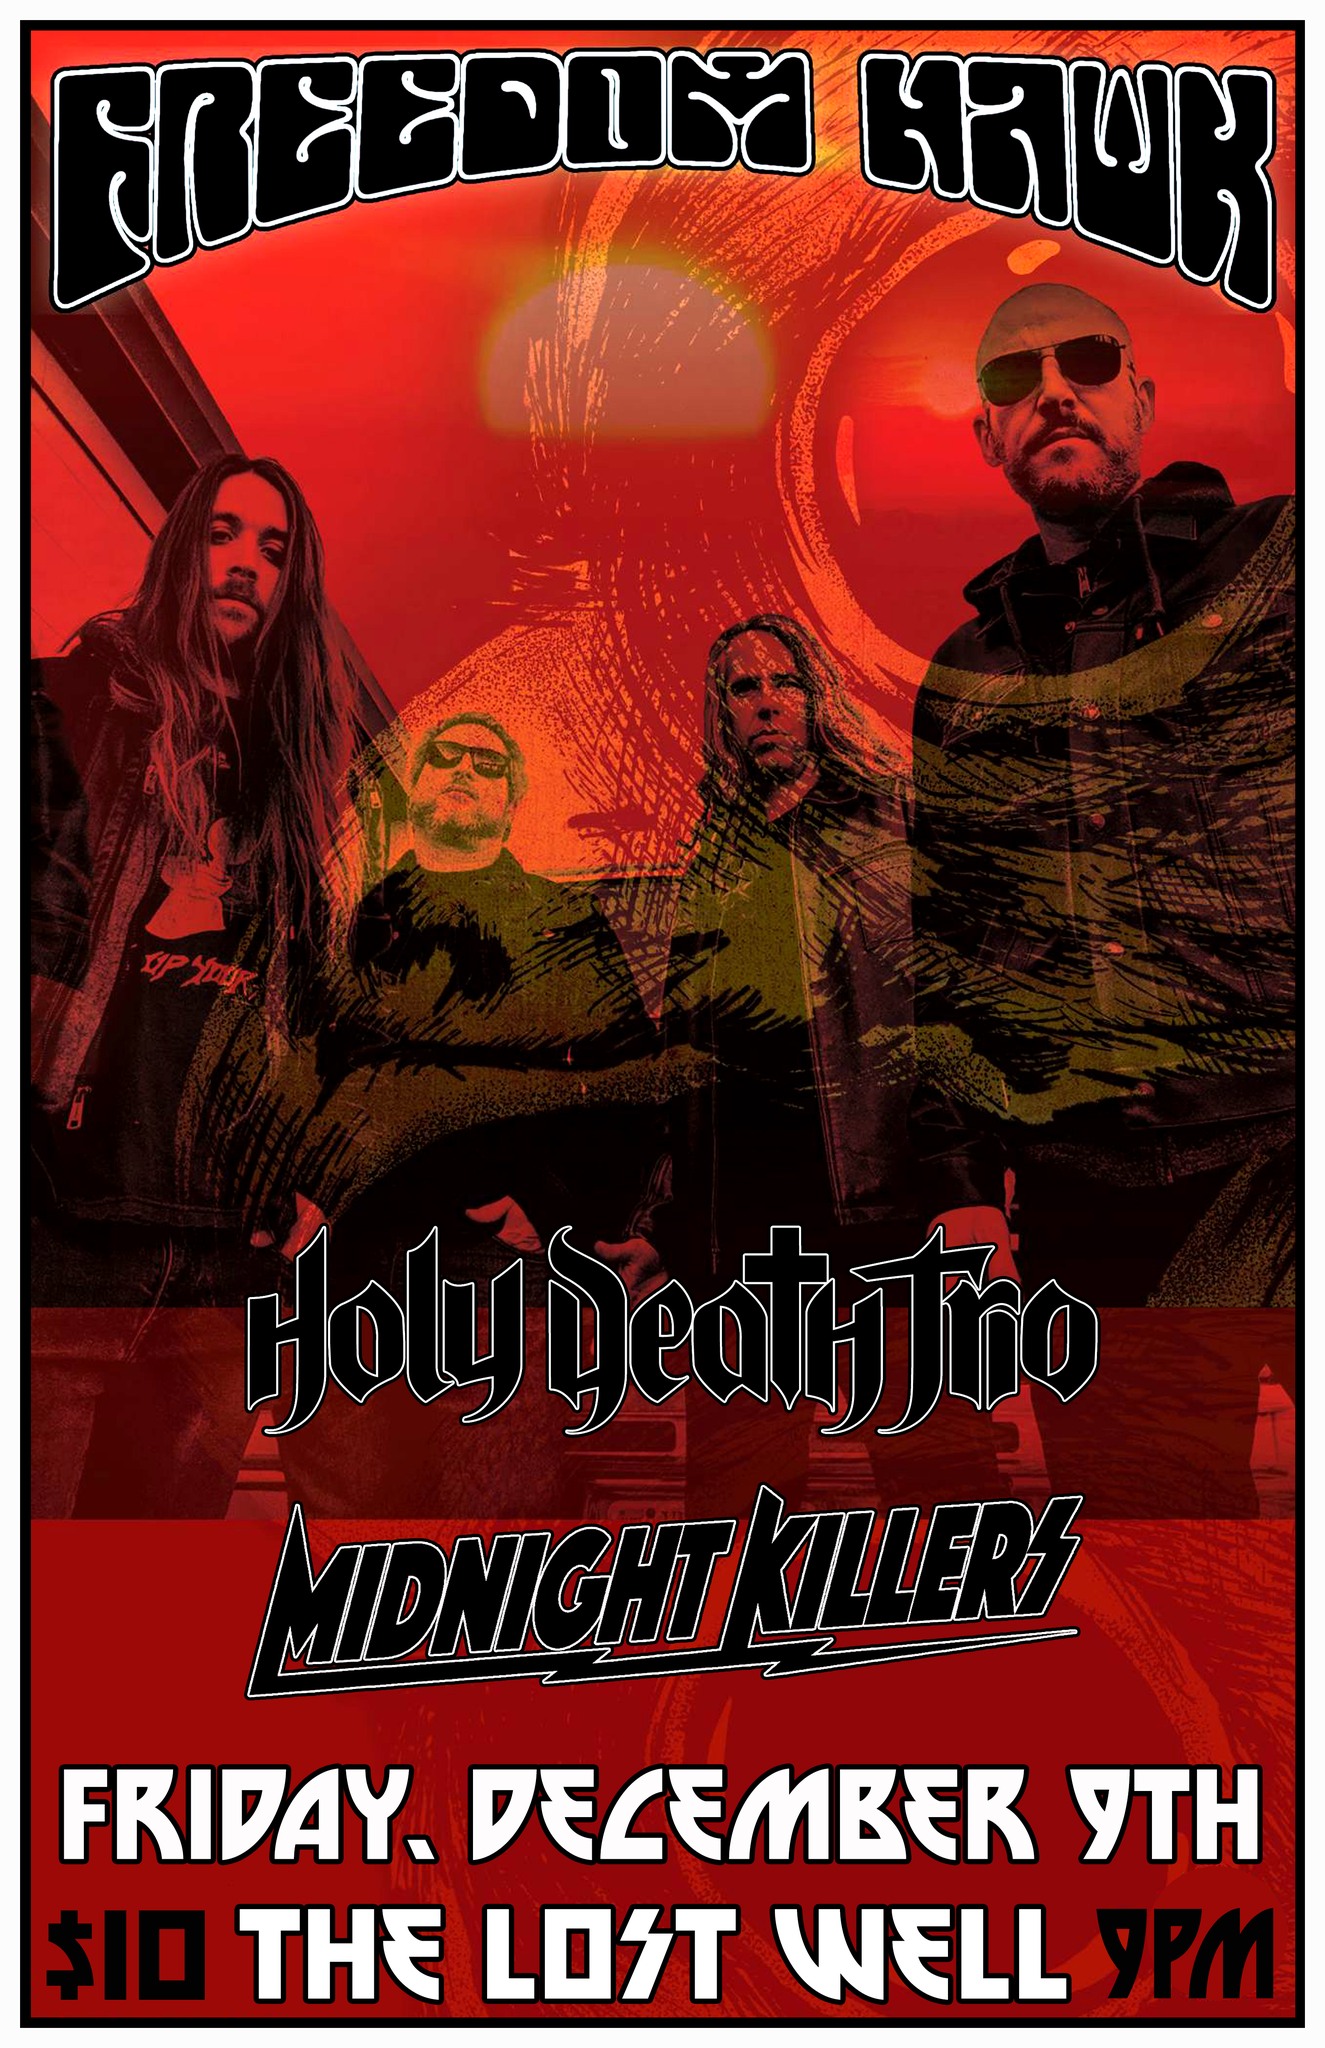 Freedom Hawk, Holy Death Trio, Midnight Killers